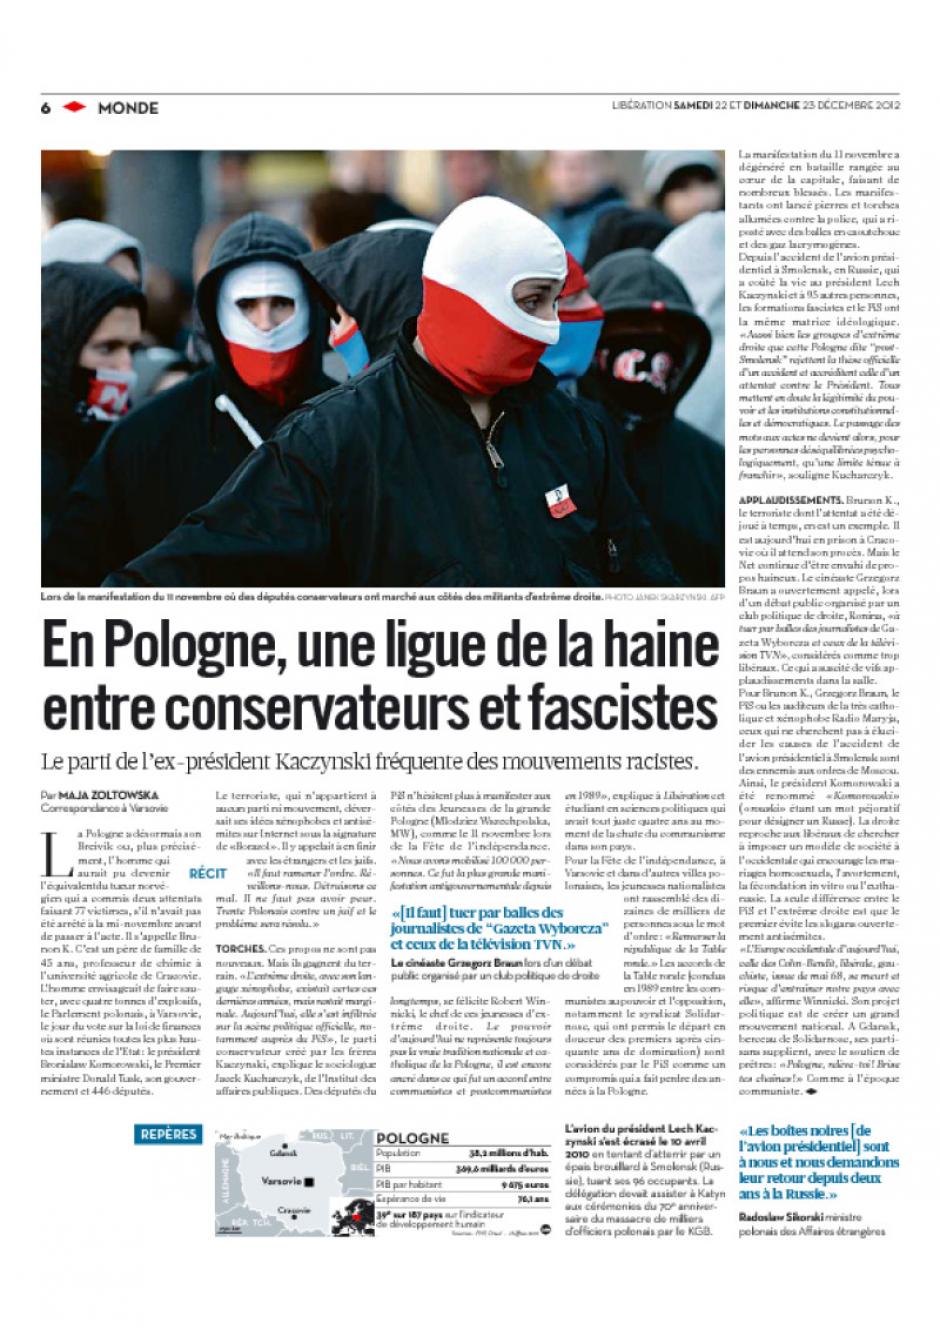 20121222-Libération-En Pologne, une ligue de la haine entre conservateurs et fascistes